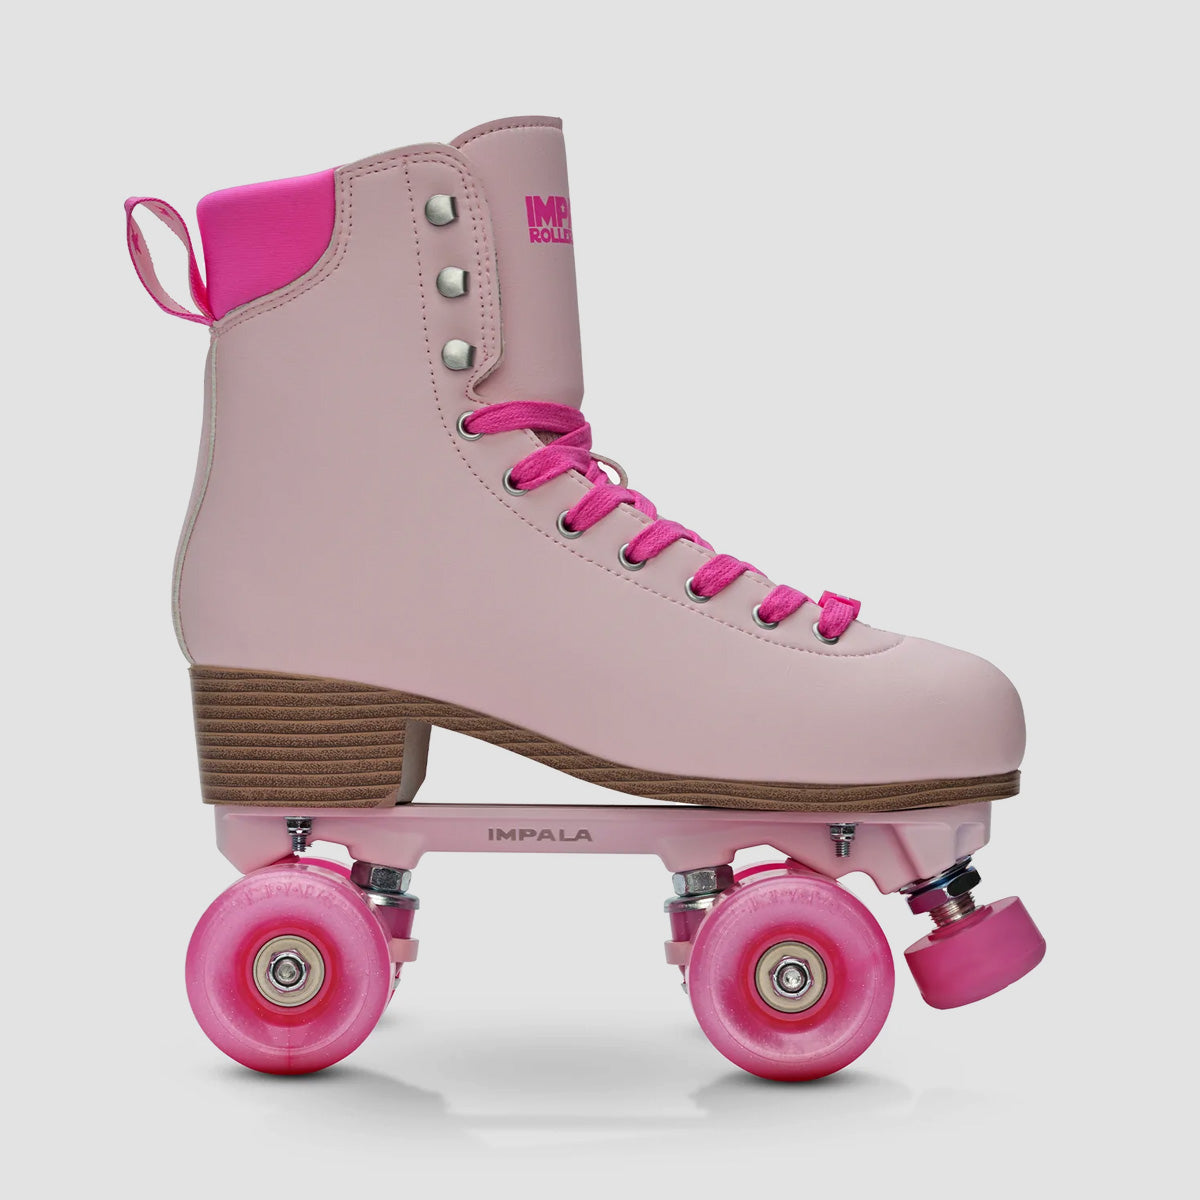 Impala Samira Quad Skates Wild Pink